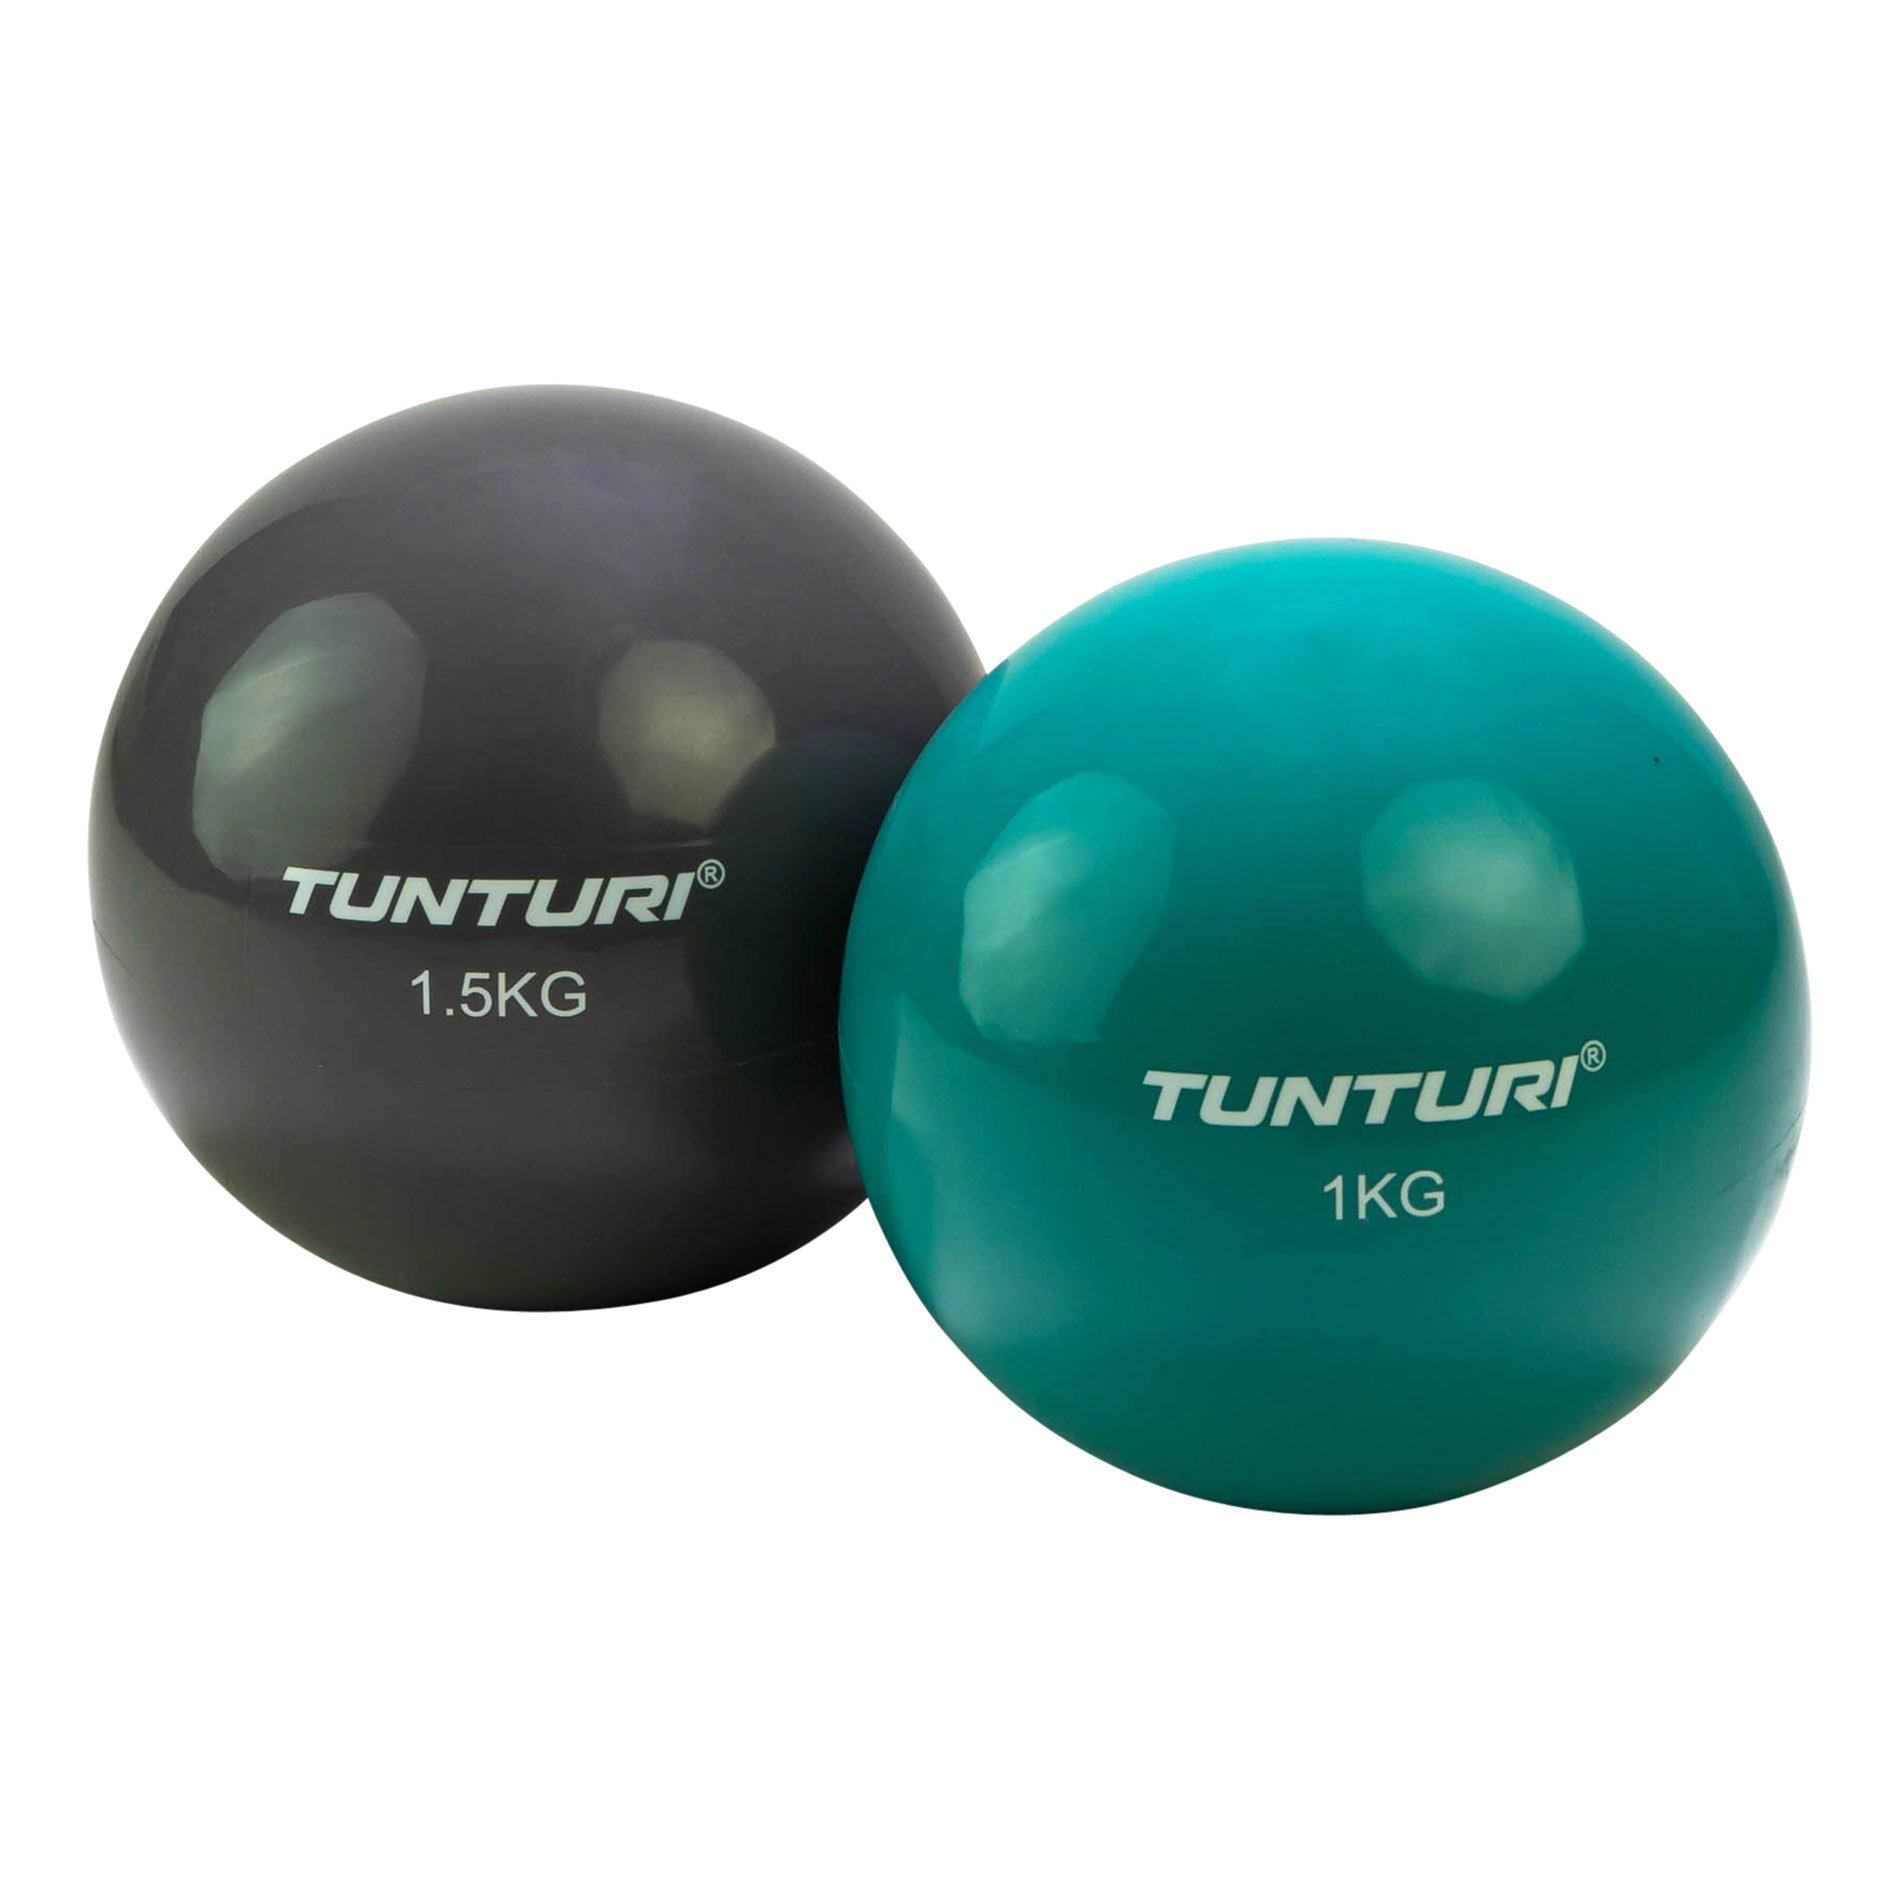 Tunturi Yoga Toningball